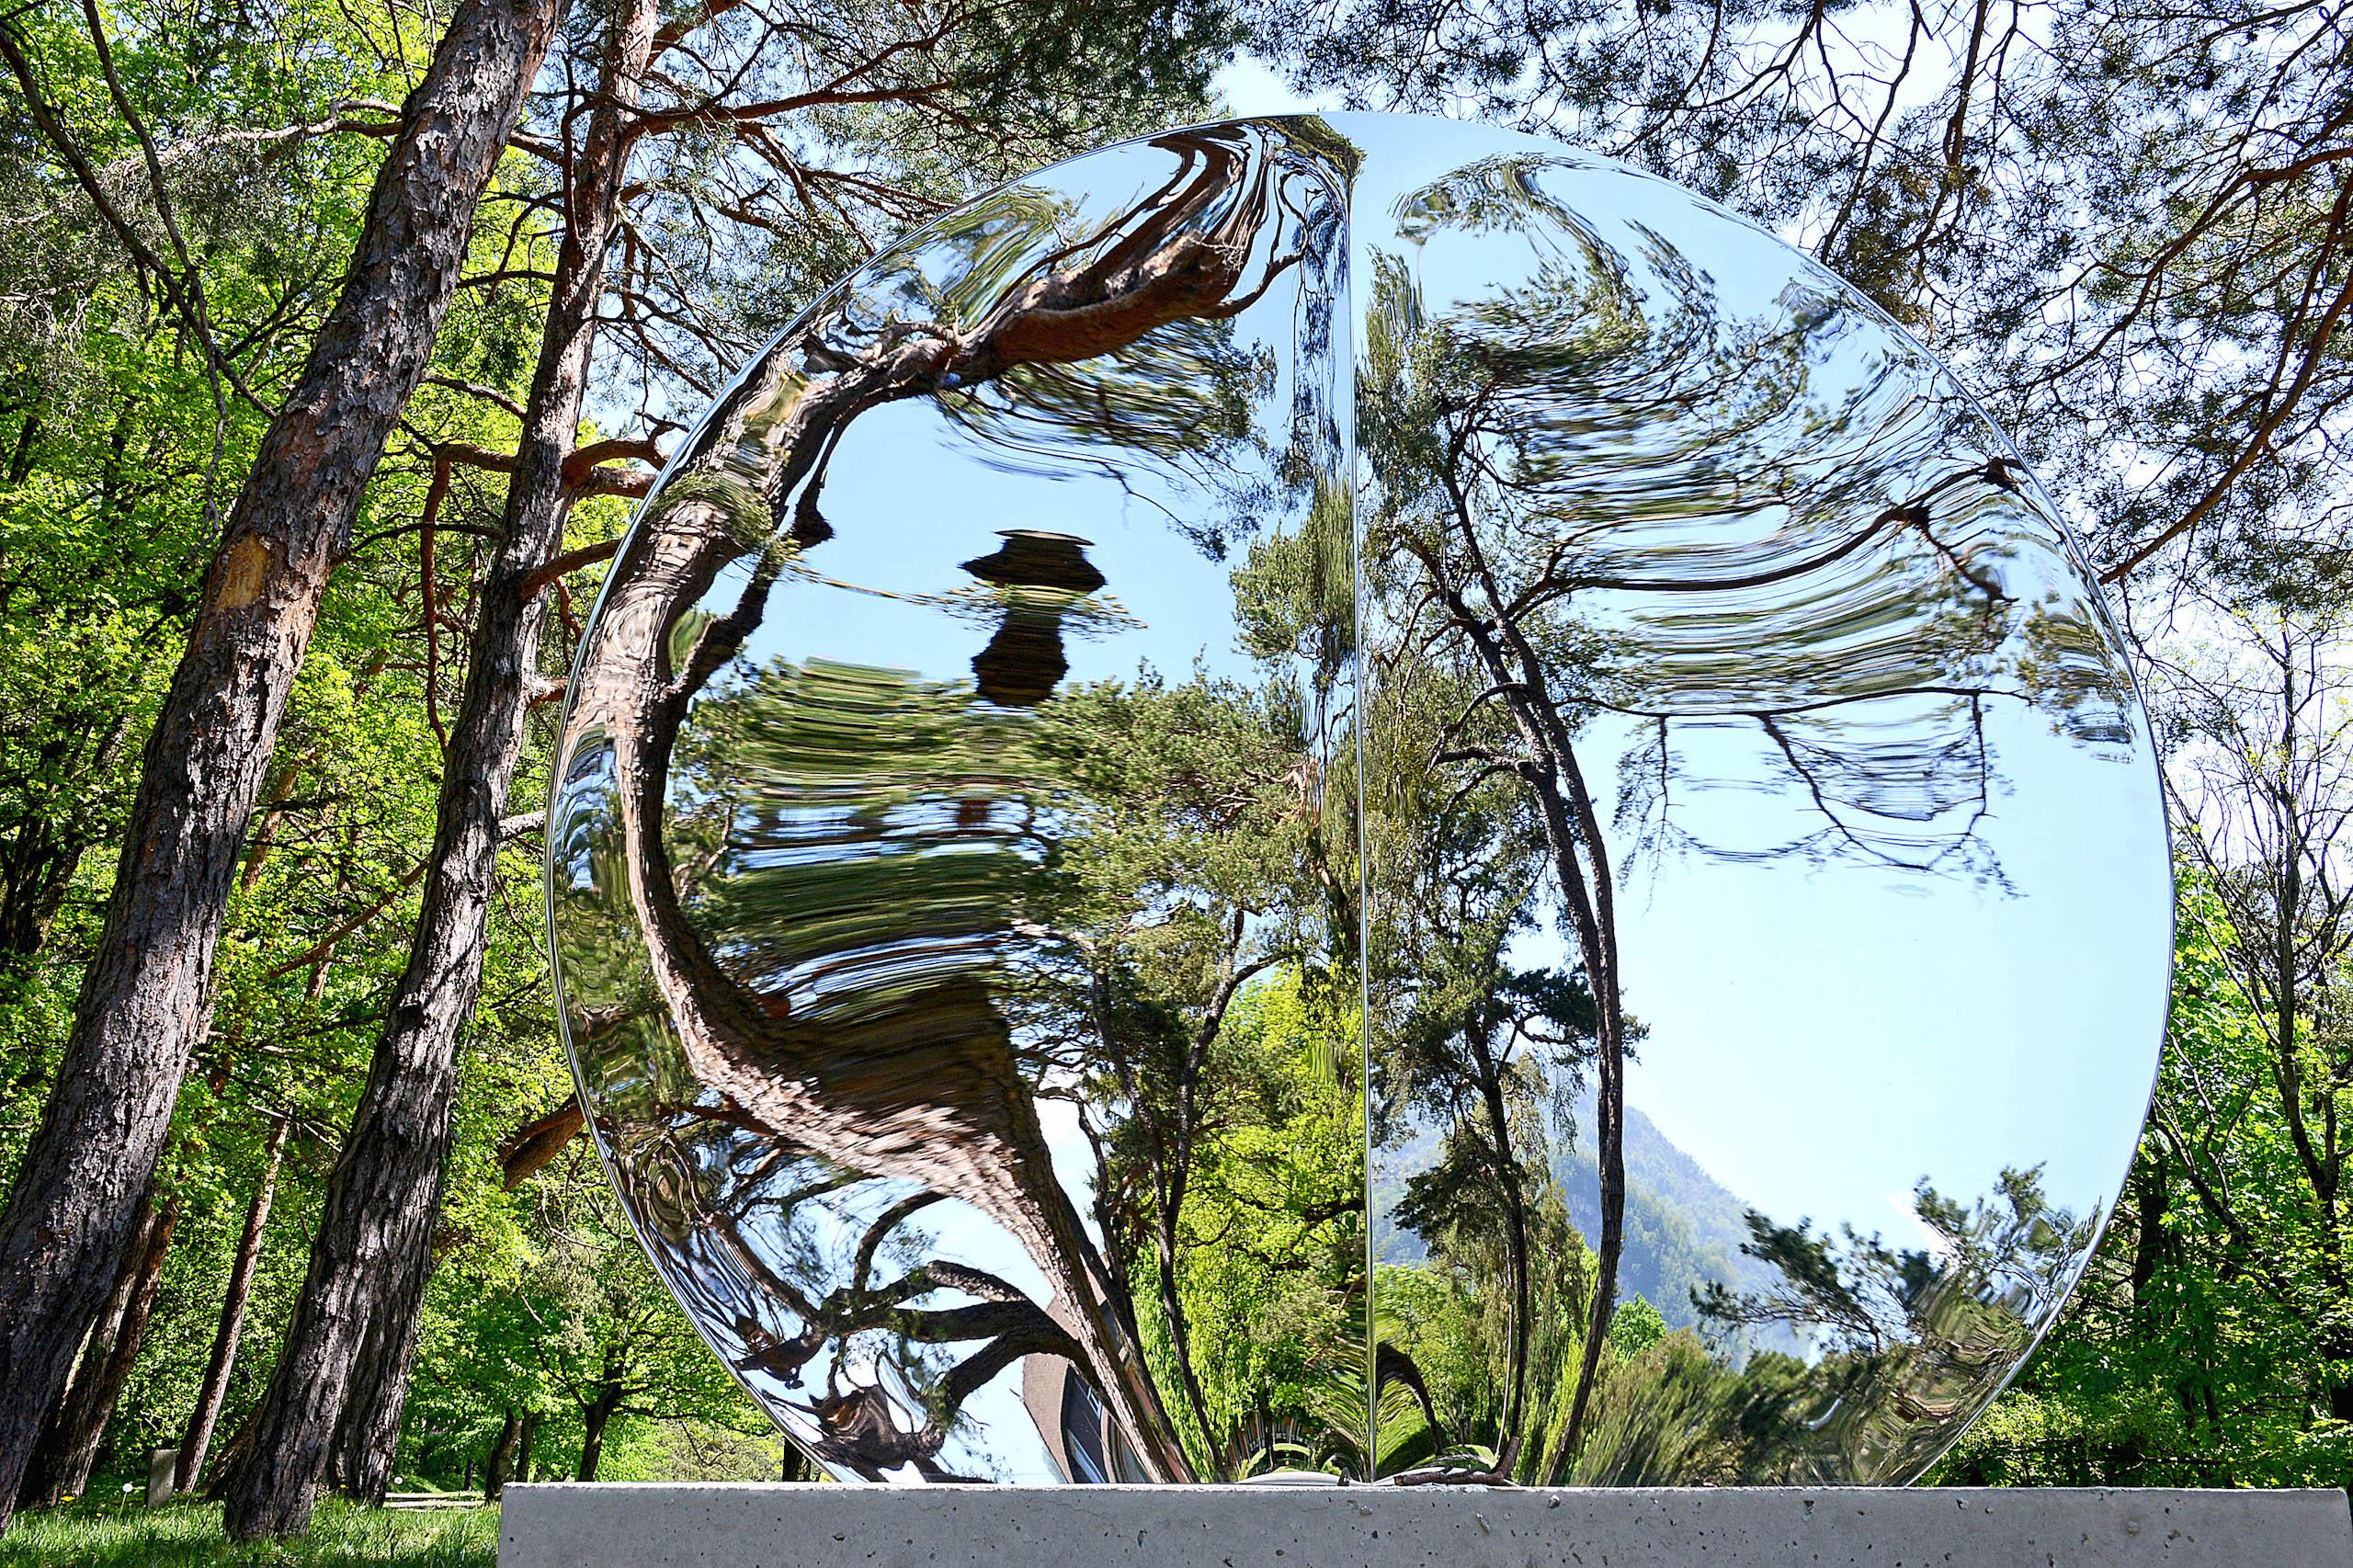 Mirror "with fold" 148 ist eine einzigartige Skulptur aus hochglanzpoliertem Edelstahl mit Betonsockel des zeitgenössischen Künstlers Franck K. Die Abmessungen betragen 168 × 148 × 60 cm (66,1 × 58,3 × 23,6 in). 
Die Skulptur ist signiert und wird